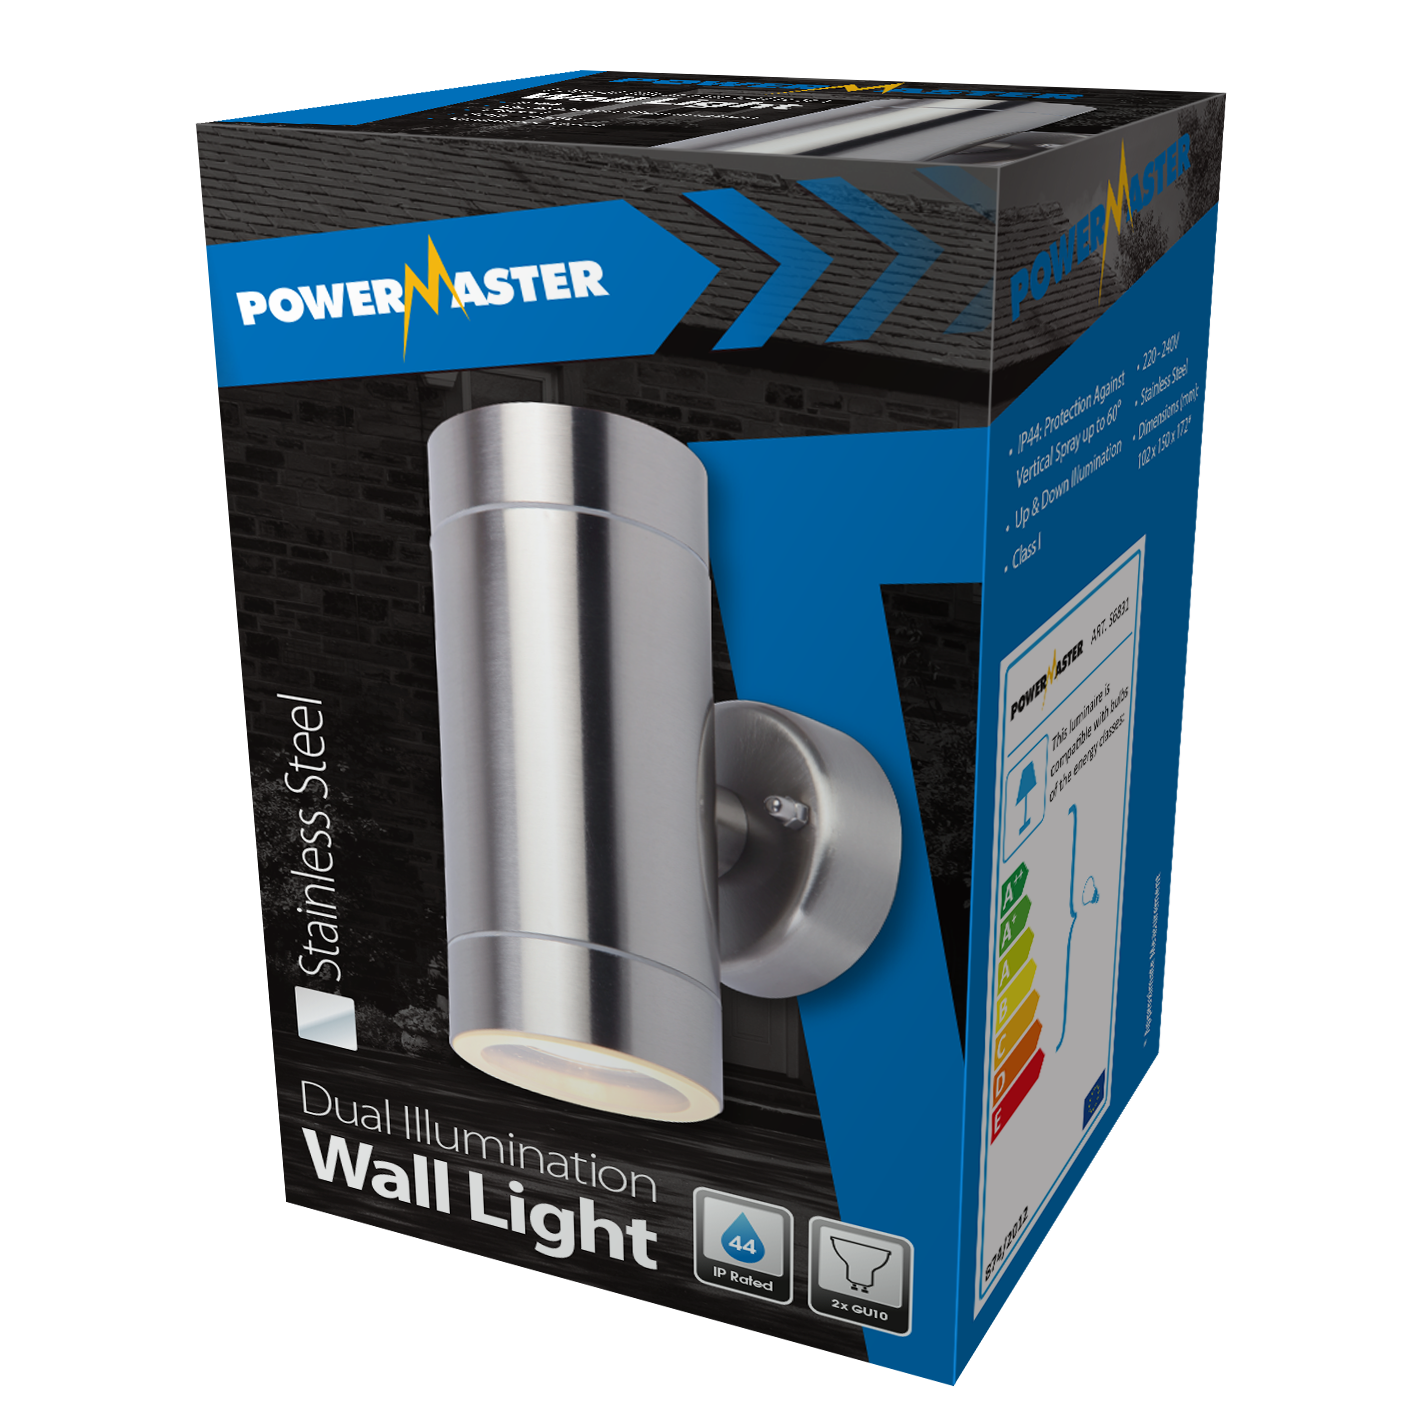 Aplique de pared con iluminación dual PowerMaster - Acero inoxidable